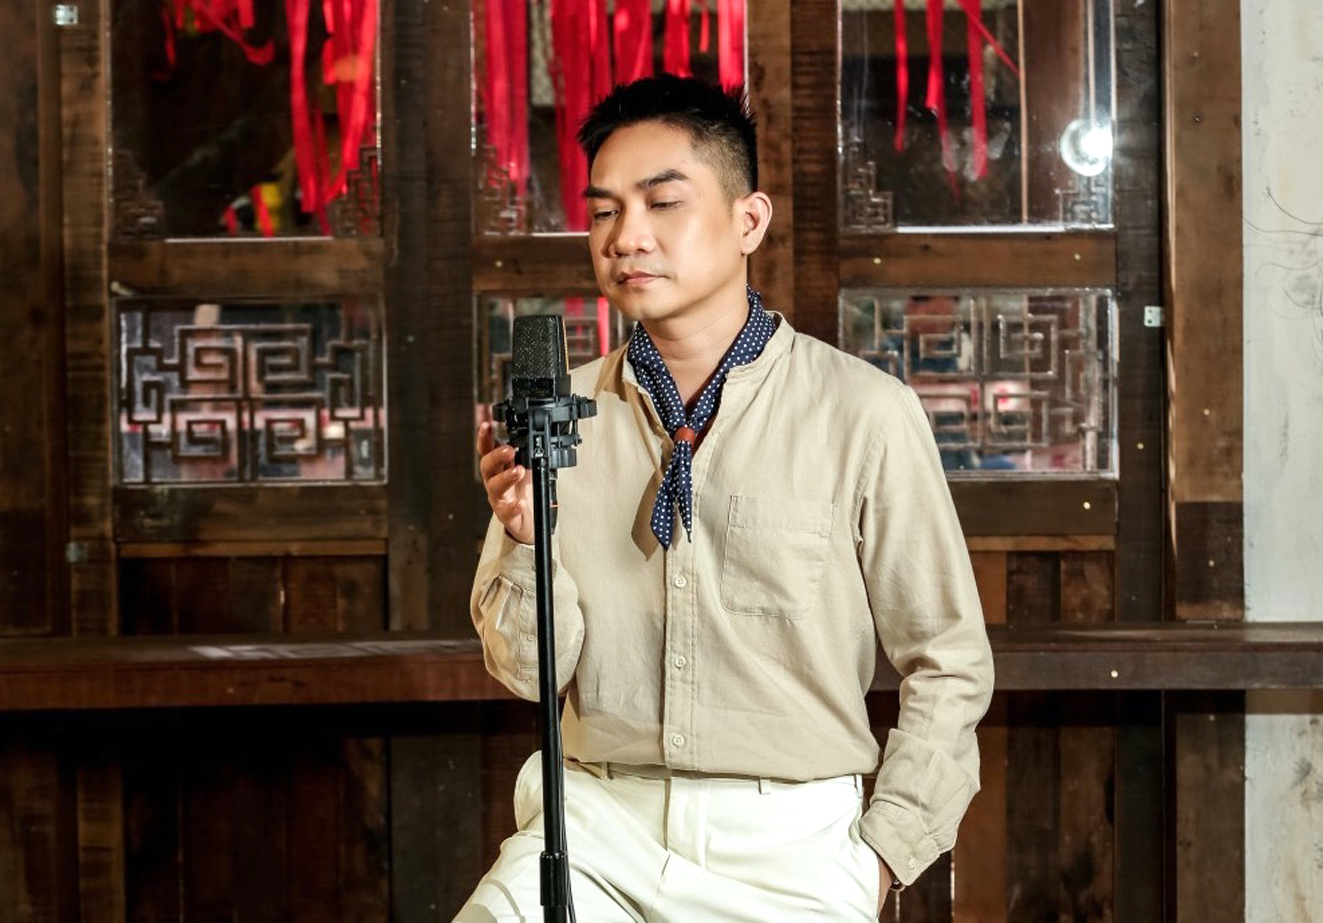 Ca sĩ Phạm Khánh Hưng trong lần tái xuất sau hơn 10 năm vắng bóng khỏi làng nhạc Việt